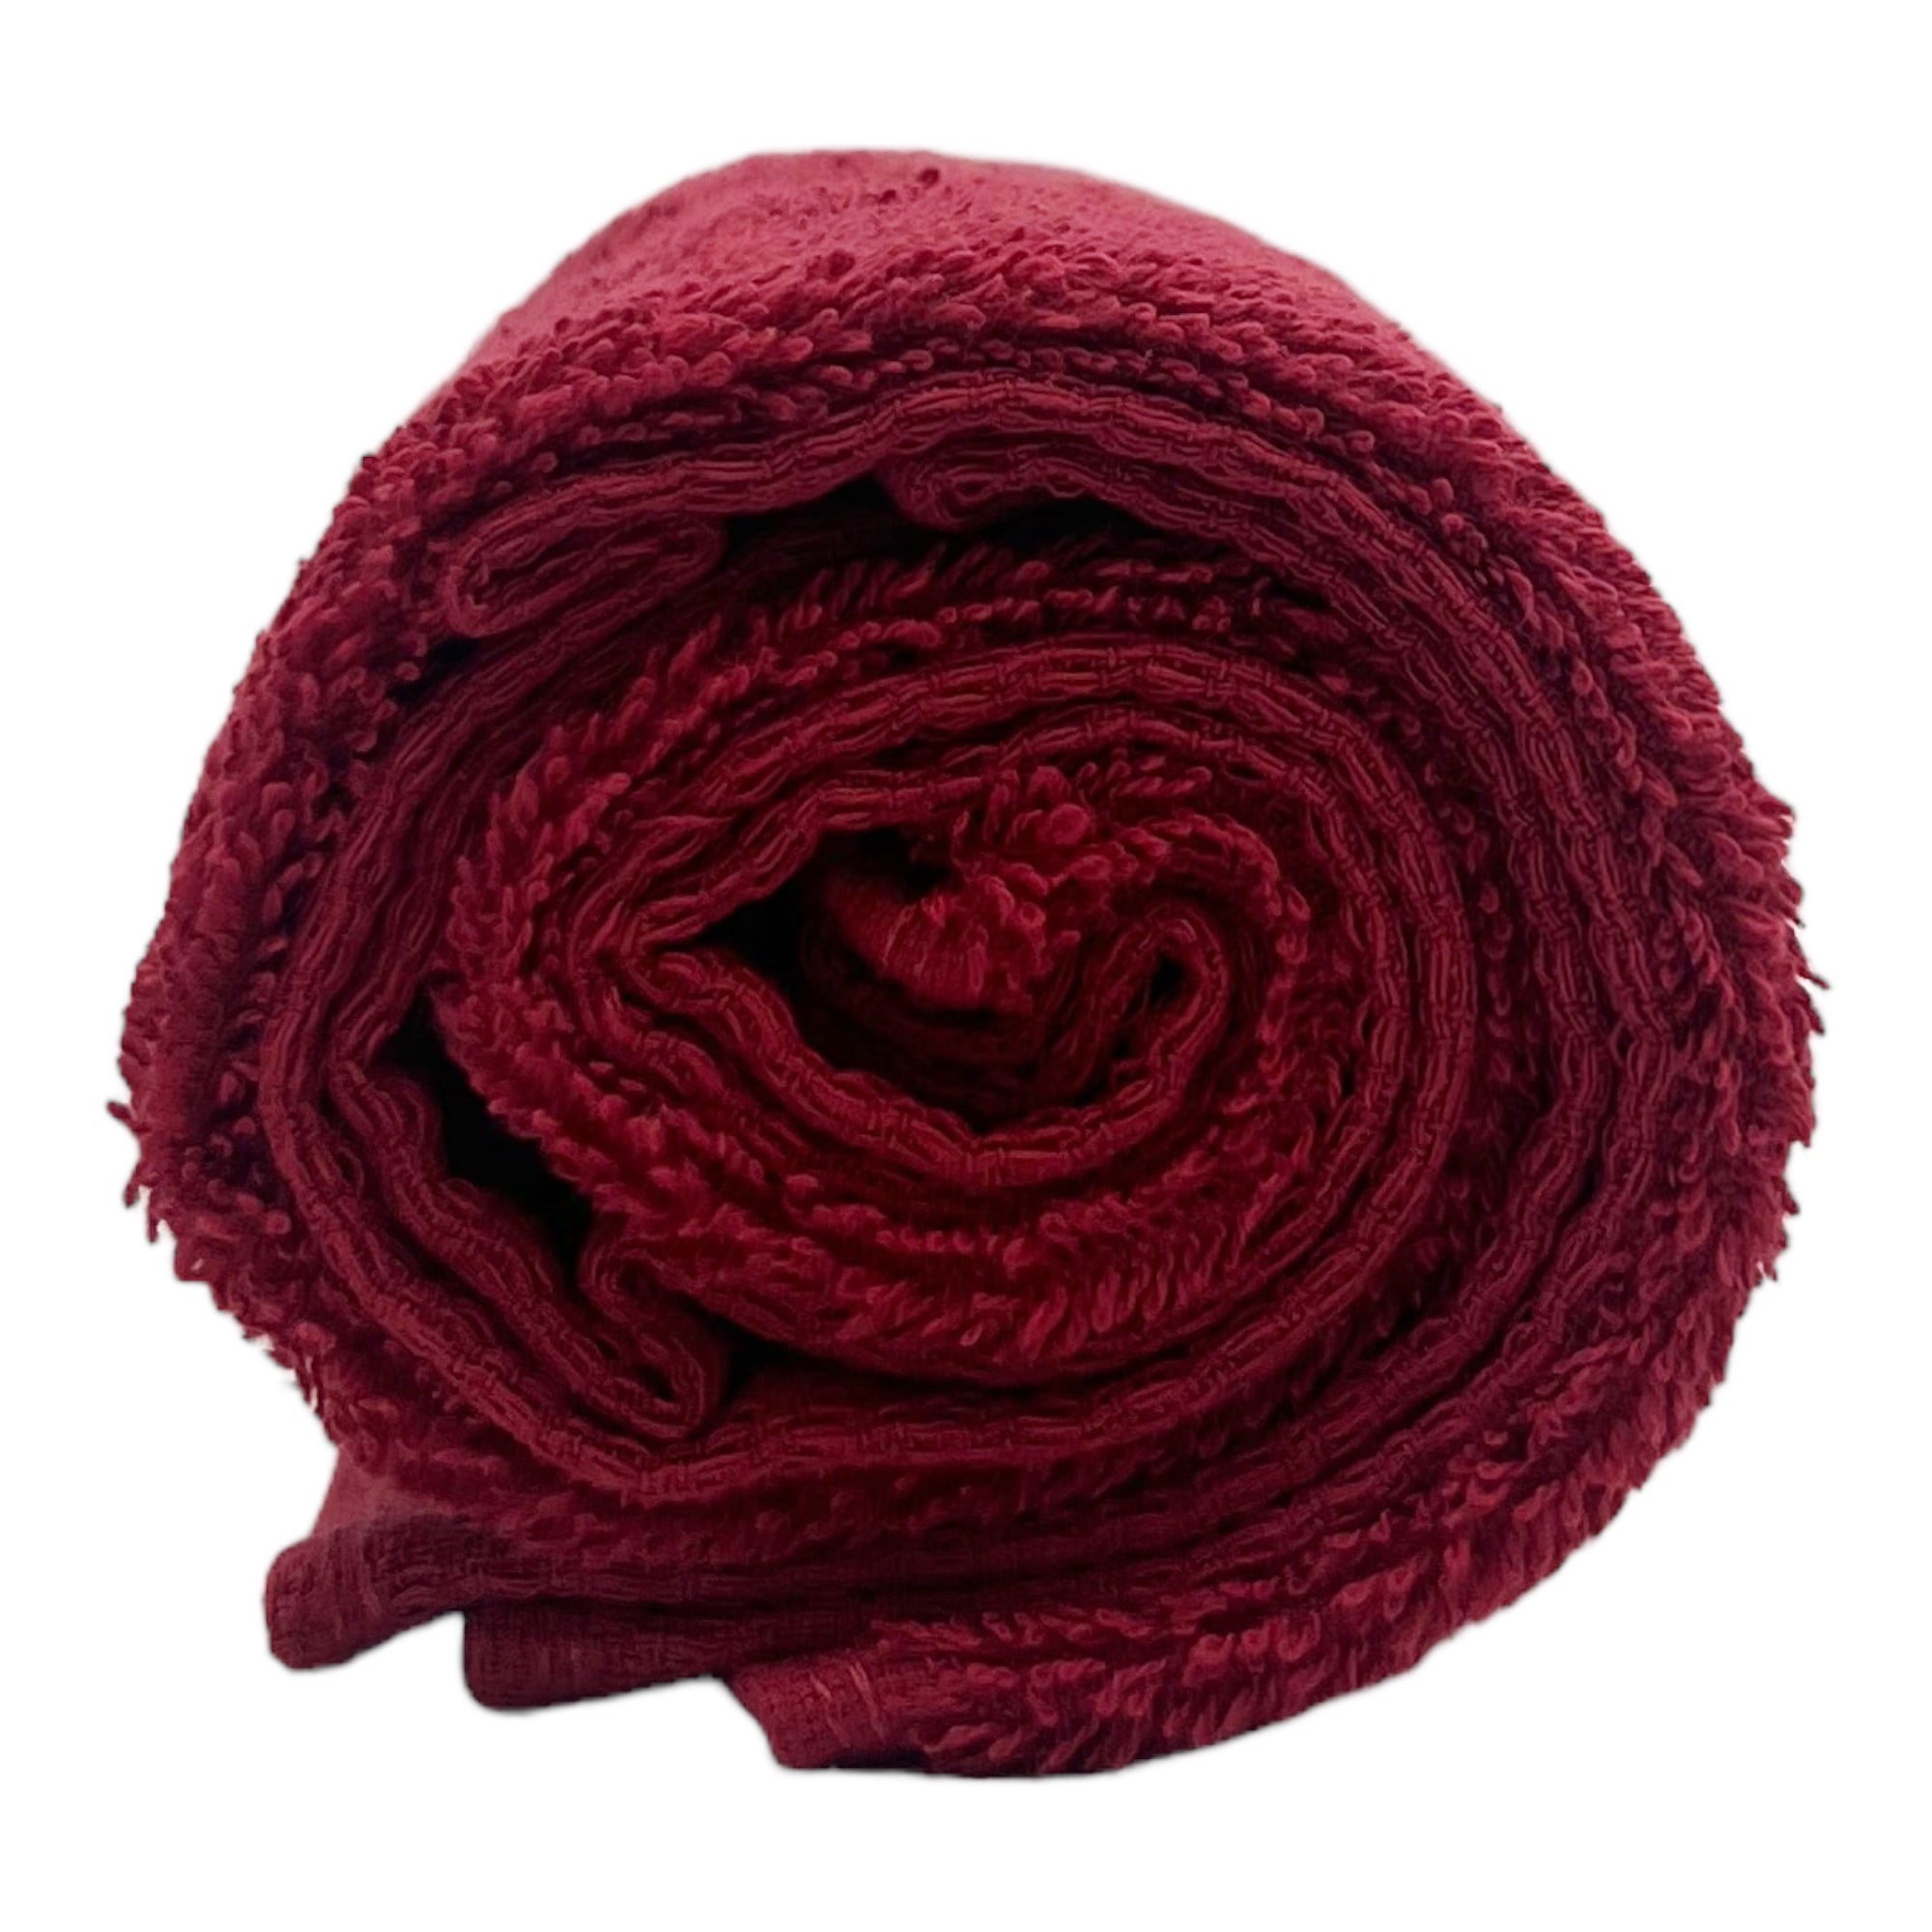 Gabri - Barber Hair Towel Red 100% Cotton 85x50cm